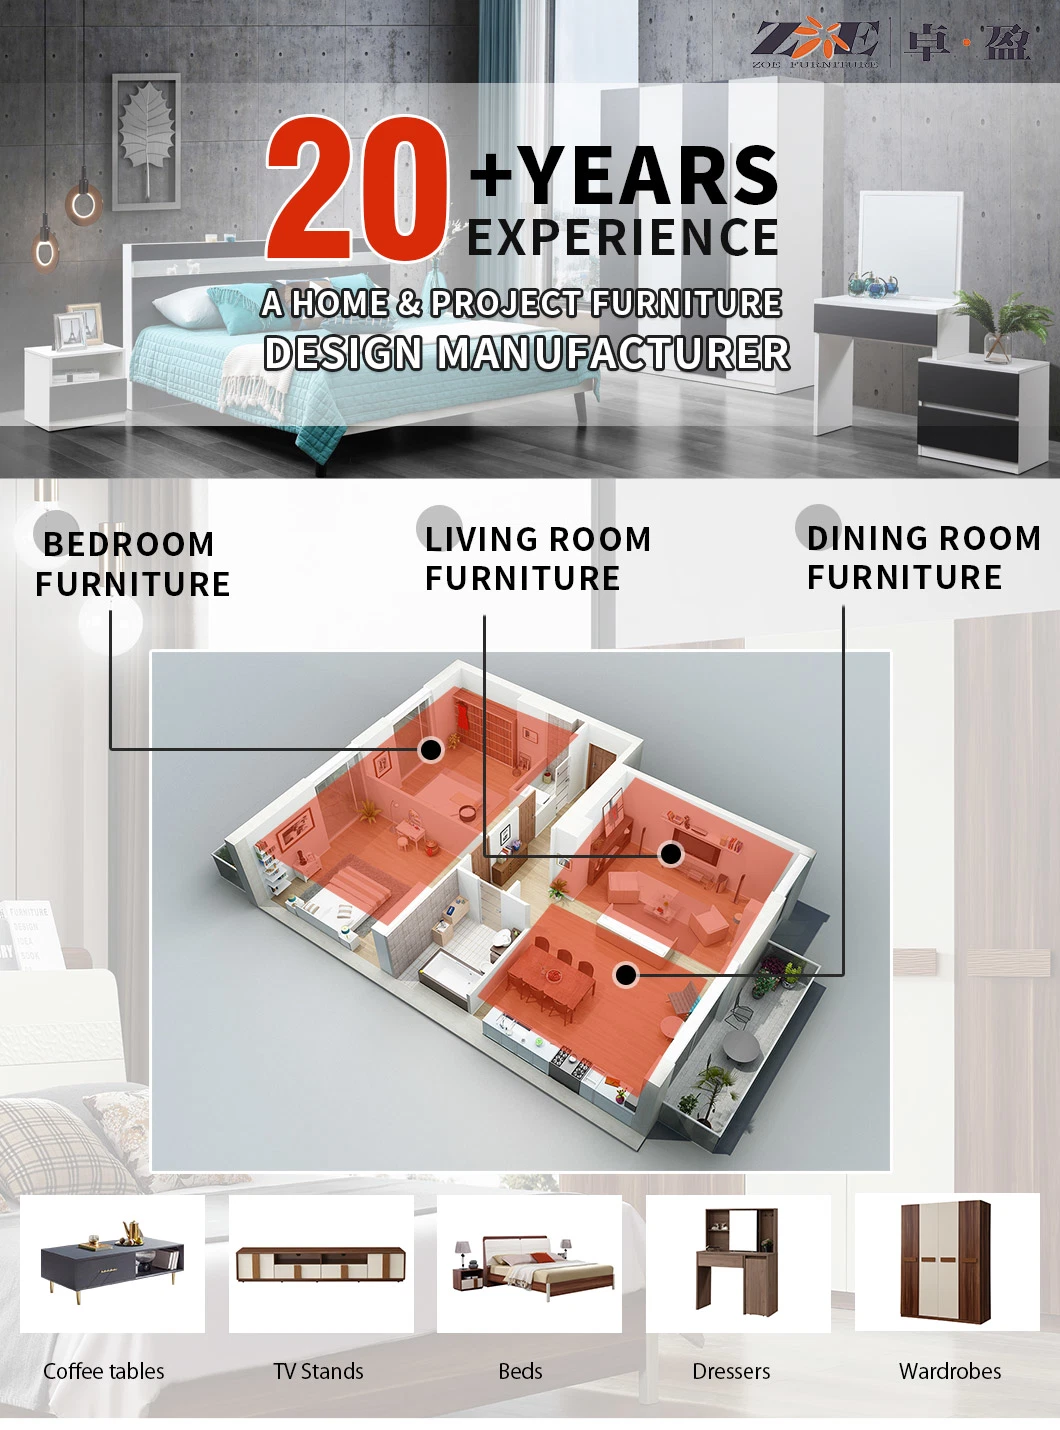 Bedroom Furniture Sets Home Furniture Hotel Casegoods Wholesale Hospitality Furniture